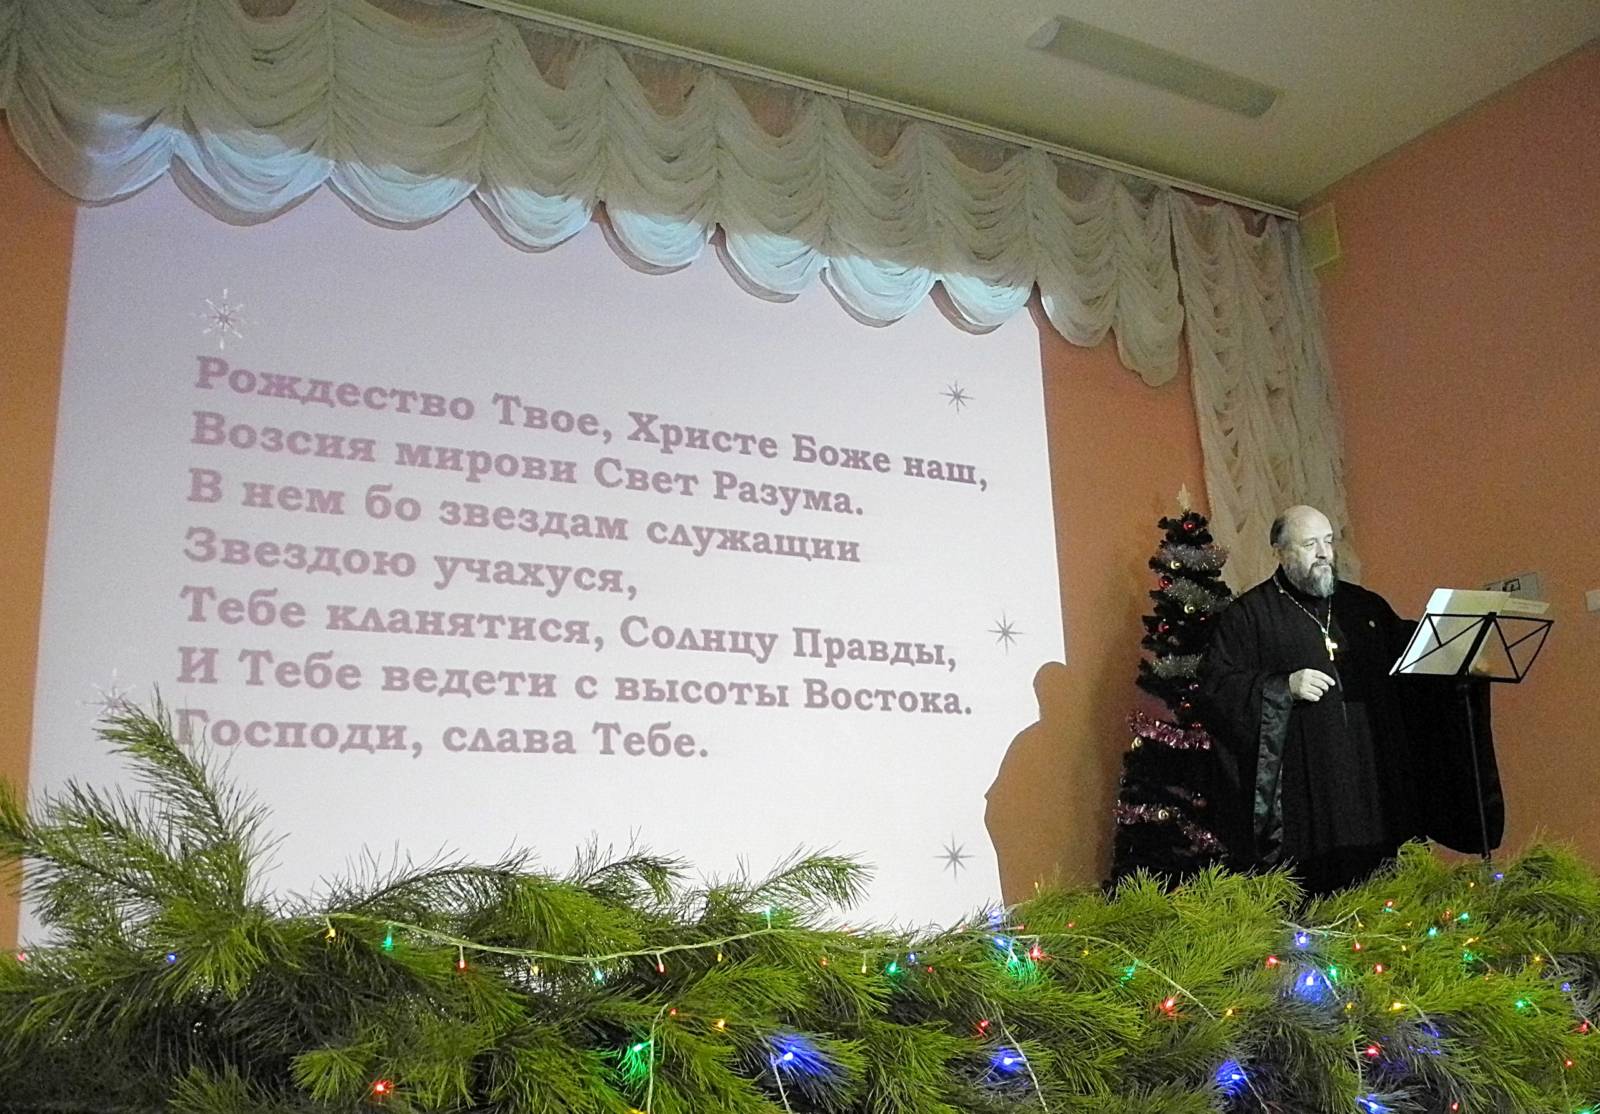 Рождественский хоровой собор в г. Урюпинске.